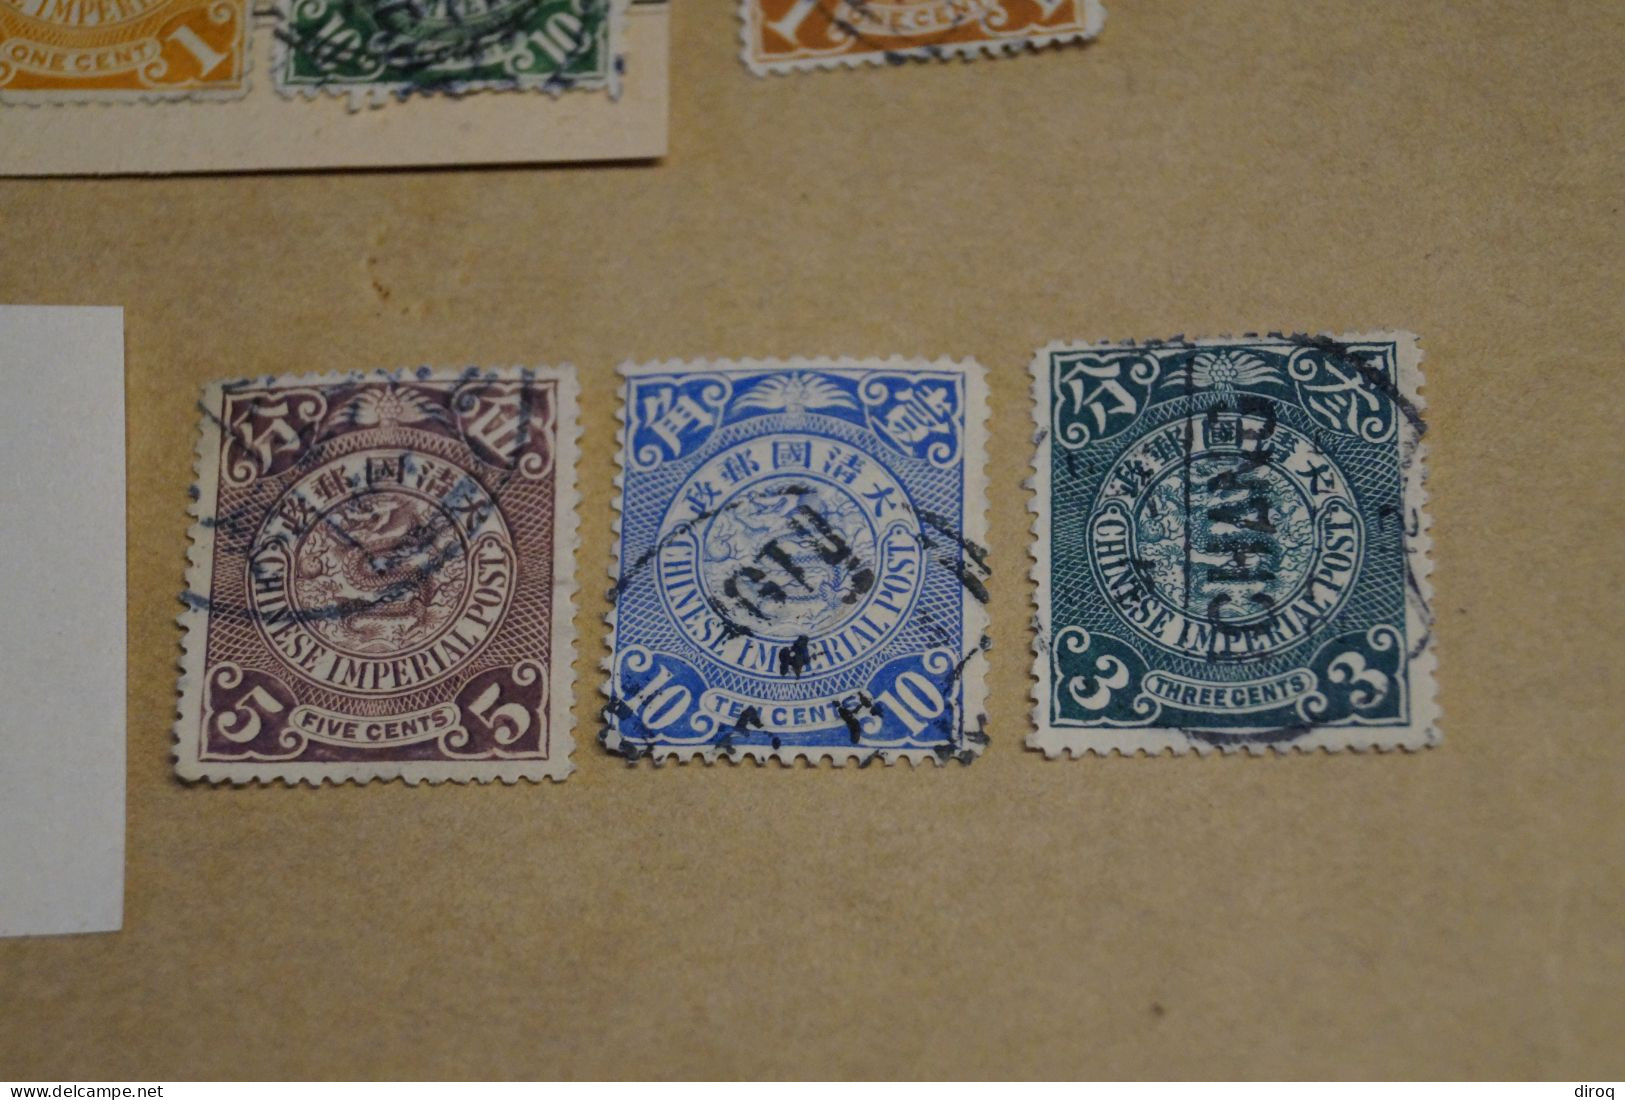 Chine,Chines,lot de 30 timbres oblitérés,1898 - 1910,certains avec surcharges, pour collection,collector